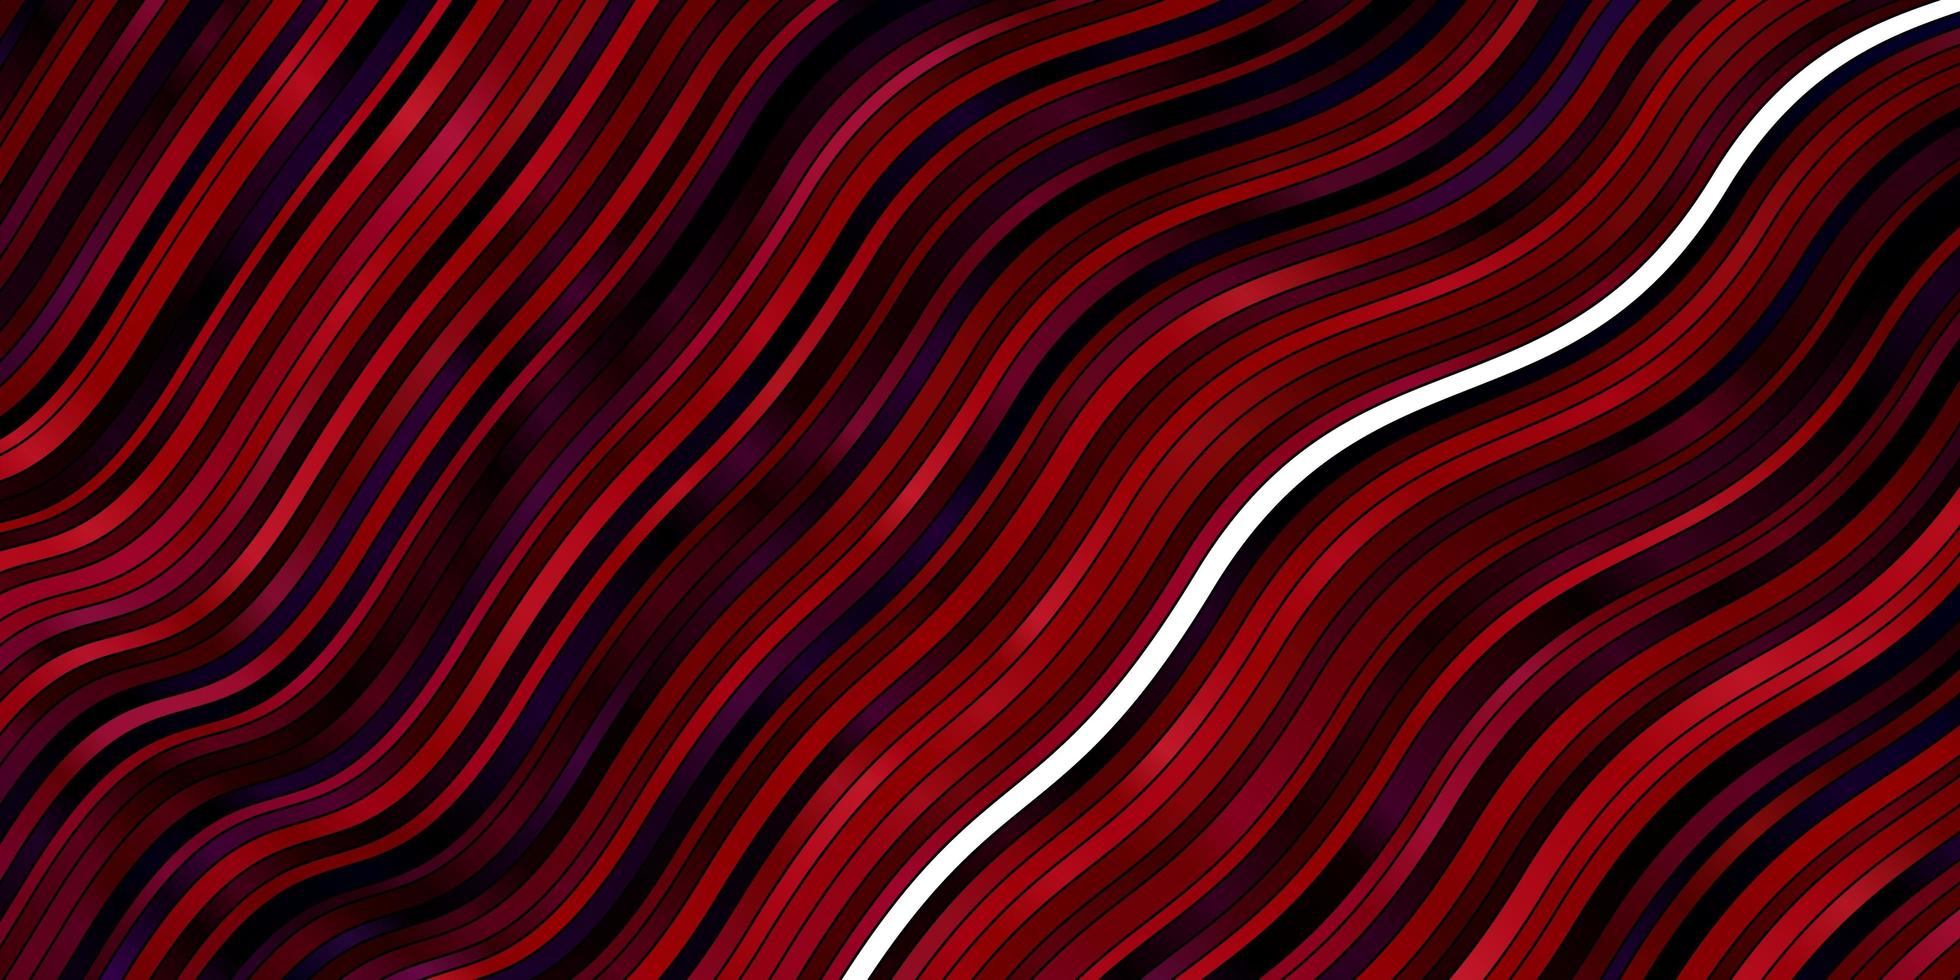 modelo de vetor azul escuro e vermelho com linhas onduladas